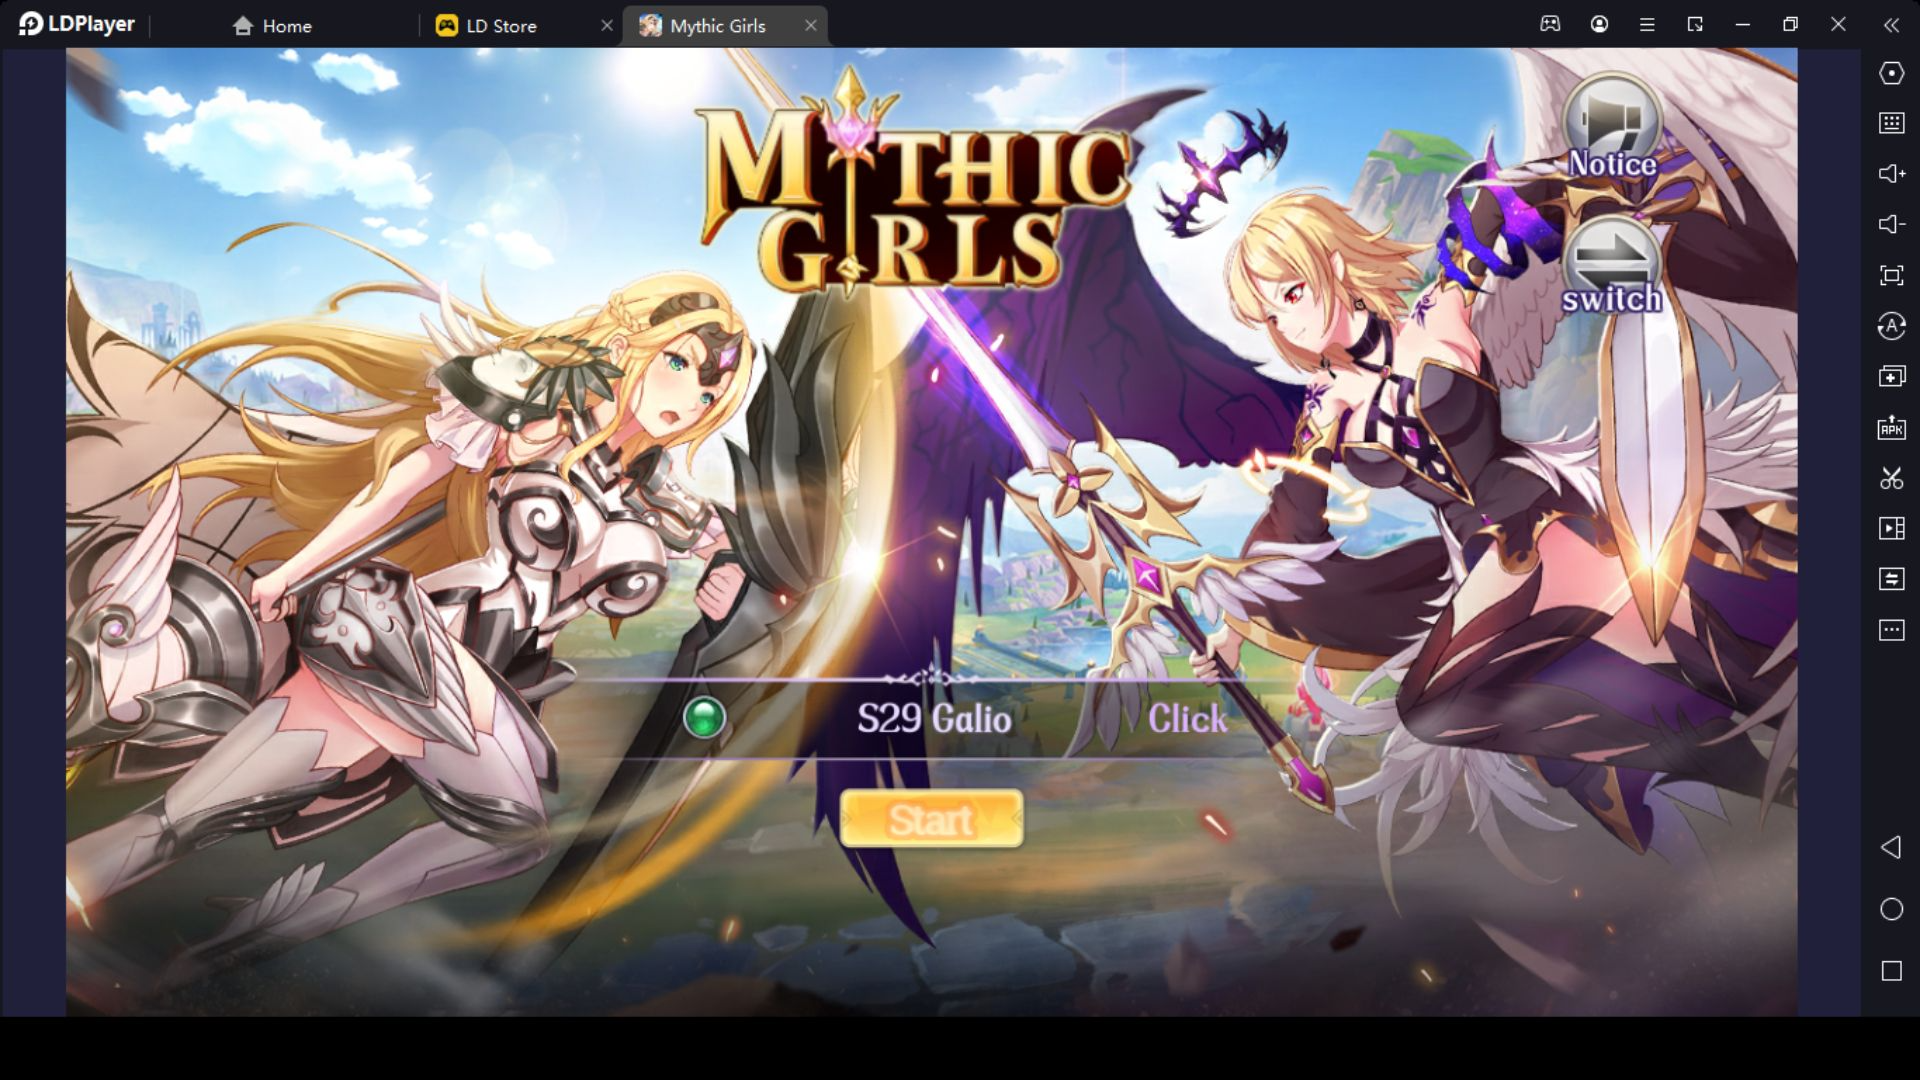 Mythic Girls Redeem Codes